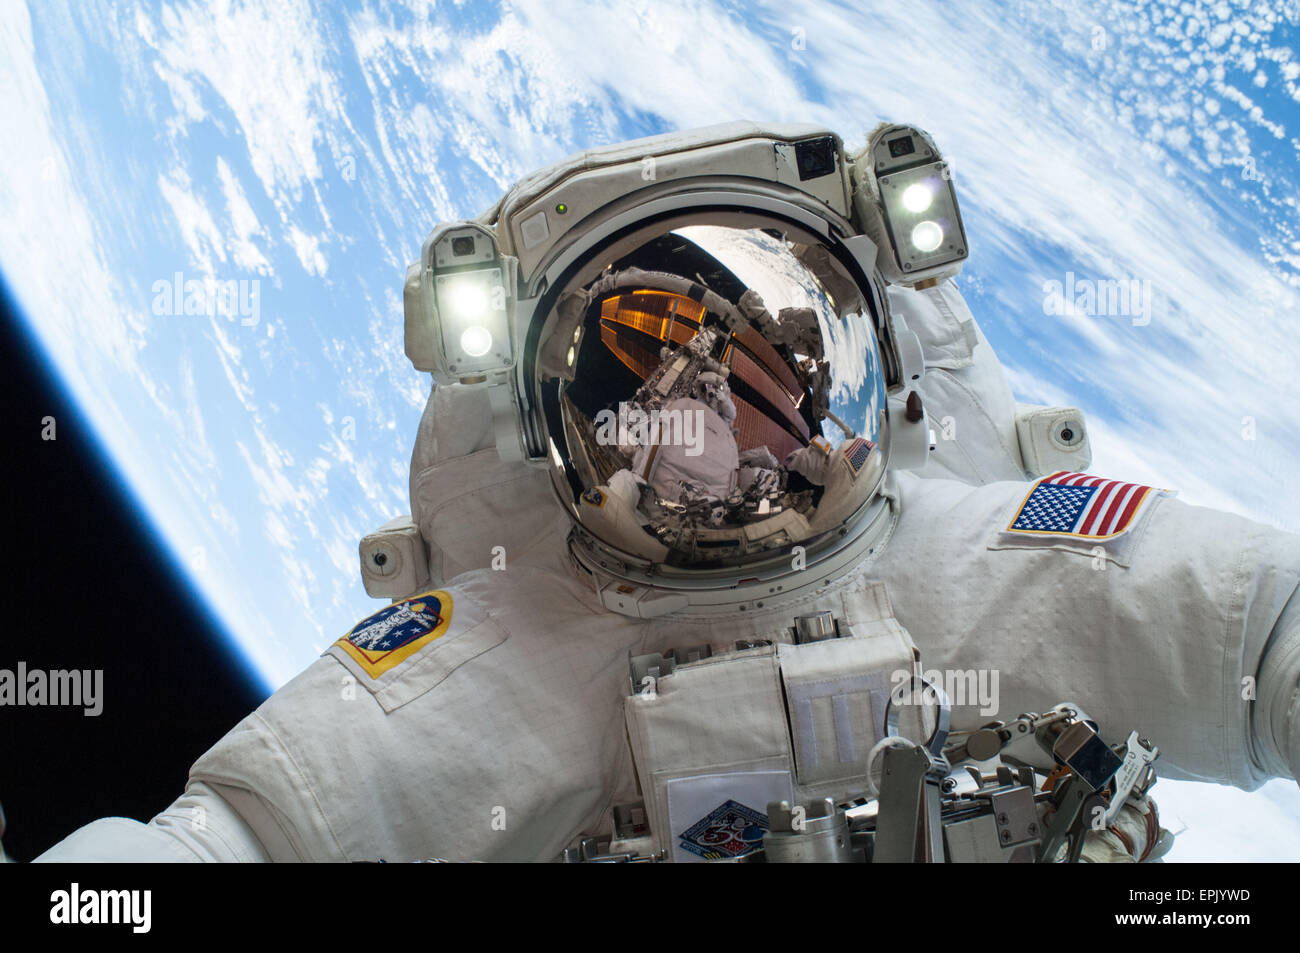 Stazione Spaziale Internazionale Expedition 38 astronauta della NASA Mike Hopkins durante la seconda delle due i viaggi futuri, sparsi in una quattro giorni di tempo per cambiare una pompa dell'acqua difettosa sull'esterno della terra stazione spaziale in orbita il 24 dicembre 2013. Egli era unita su entrambi i viaggi futuri da astronauta della NASA Rick Mastracchio che si vede riflessa nella visiera del casco. Foto Stock